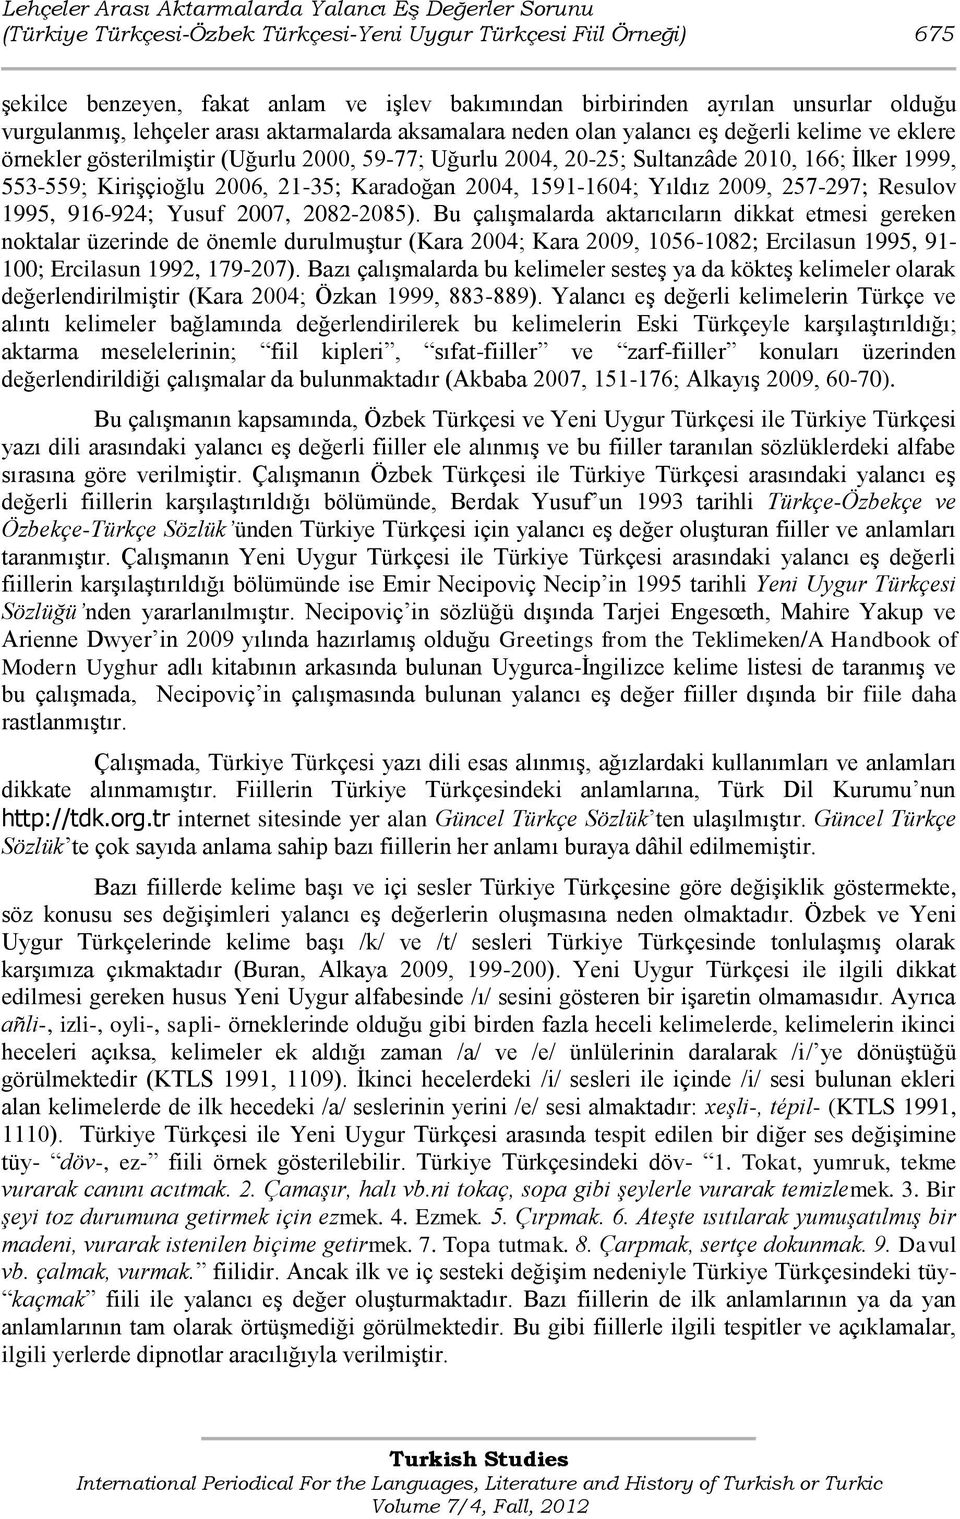 166; Ġlker 1999, 553-559; KiriĢçioğlu 2006, 21-35; Karadoğan 2004, 1591-1604; Yıldız 2009, 257-297; Resulov 1995, 916-924; Yusuf 2007, 2082-2085).